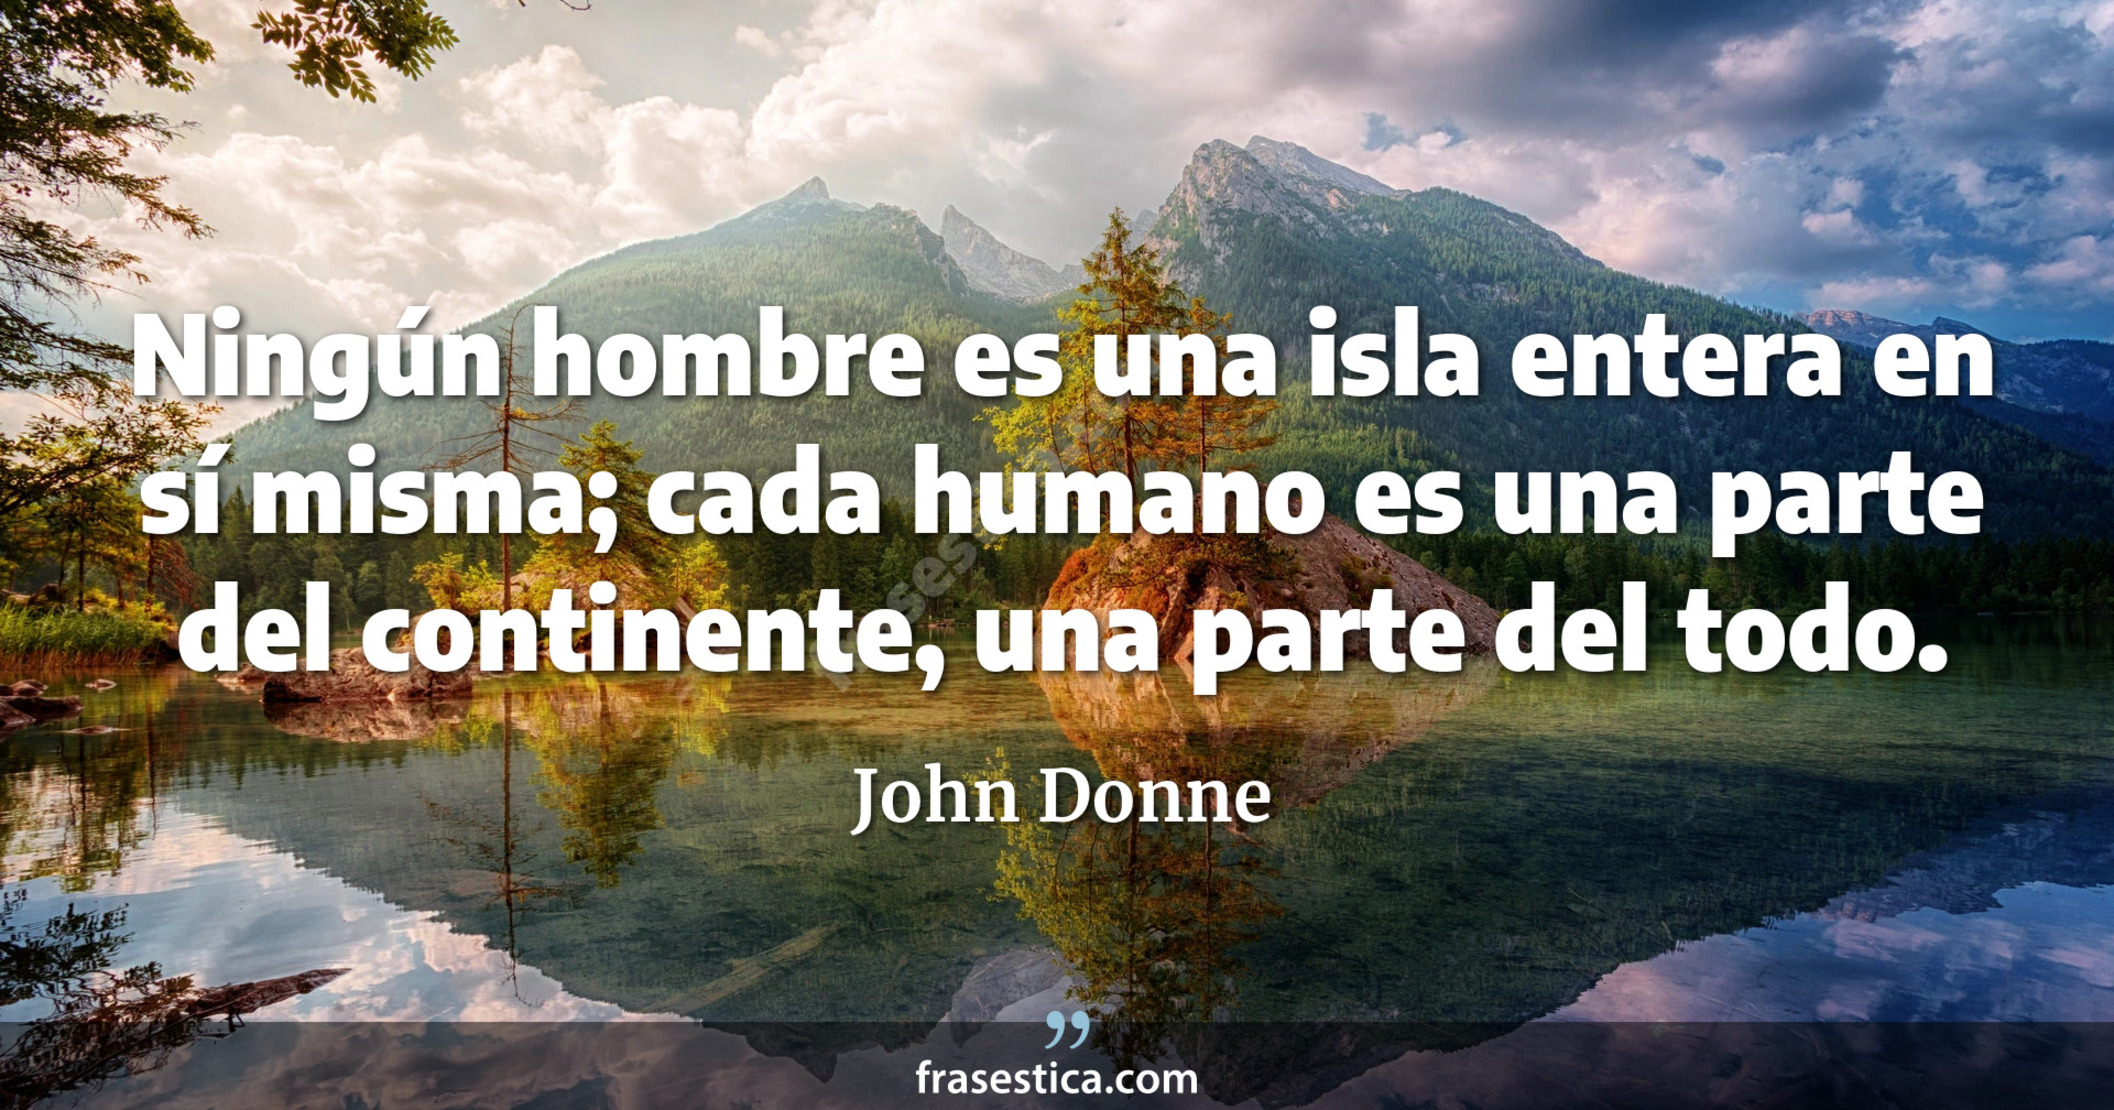 Ningún hombre es una isla entera en sí misma; cada humano es una parte del continente, una parte del todo. - John Donne